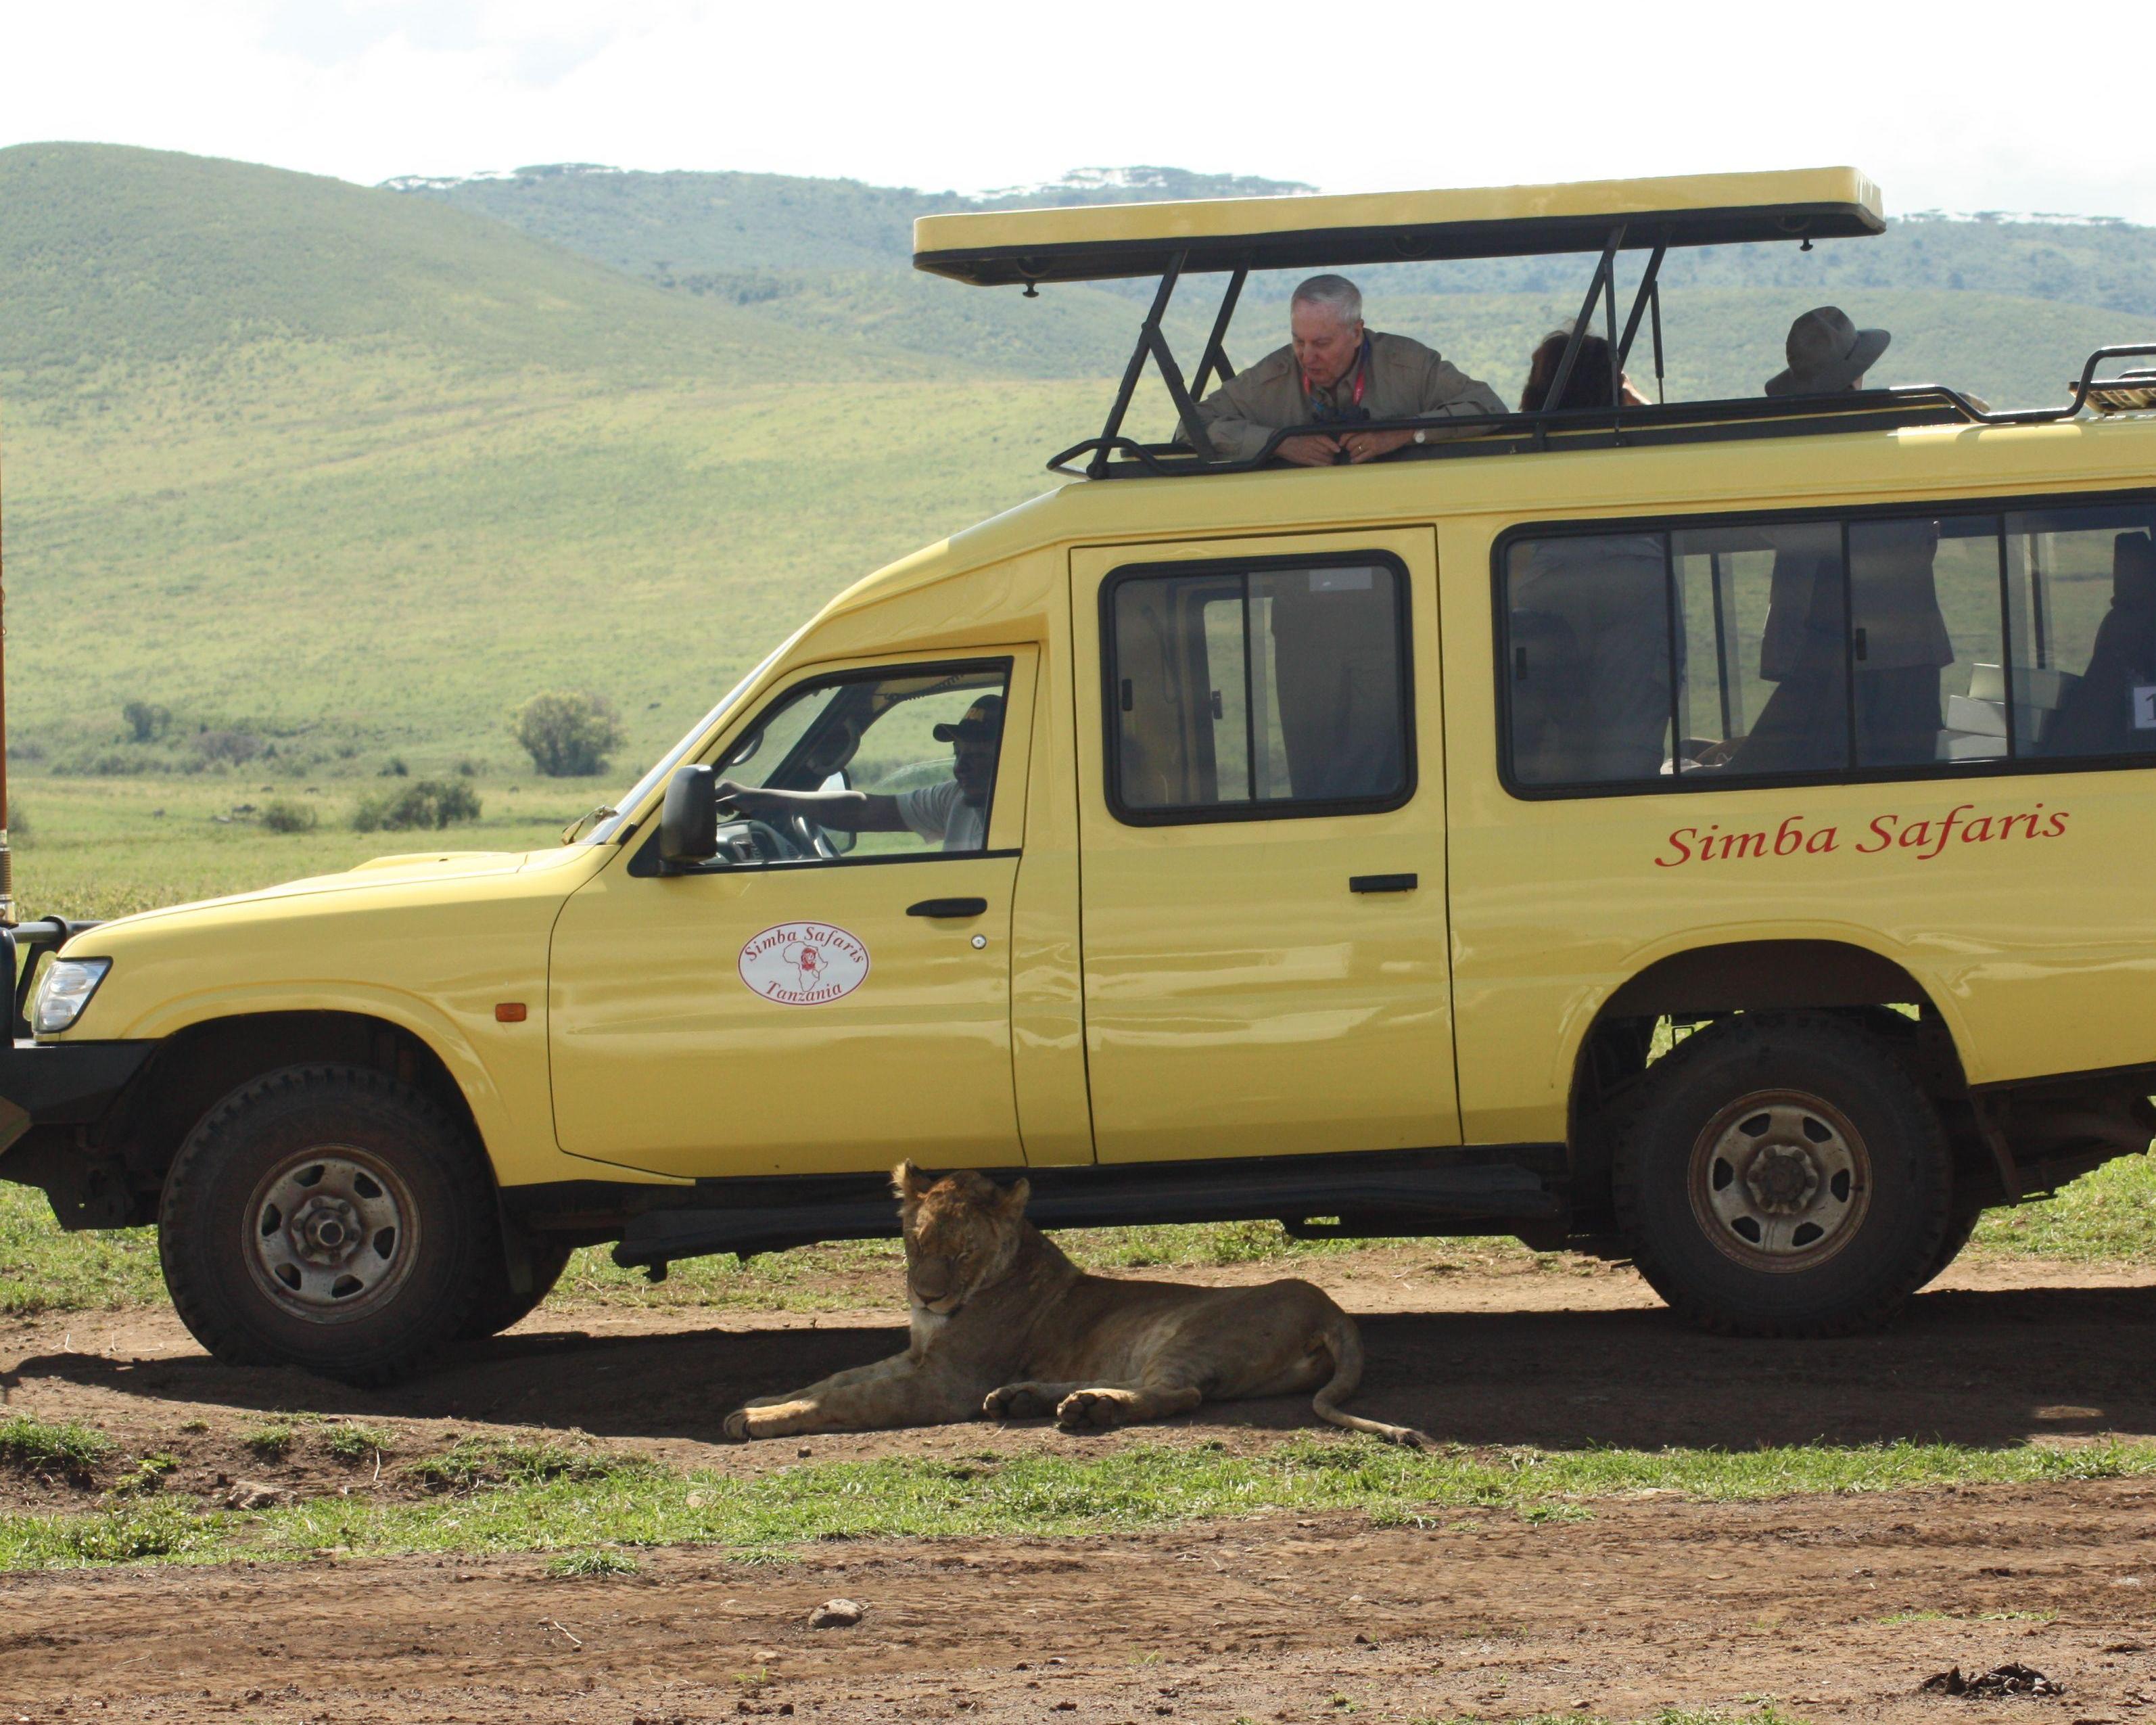 Ngorongoro & Tarangire Safari